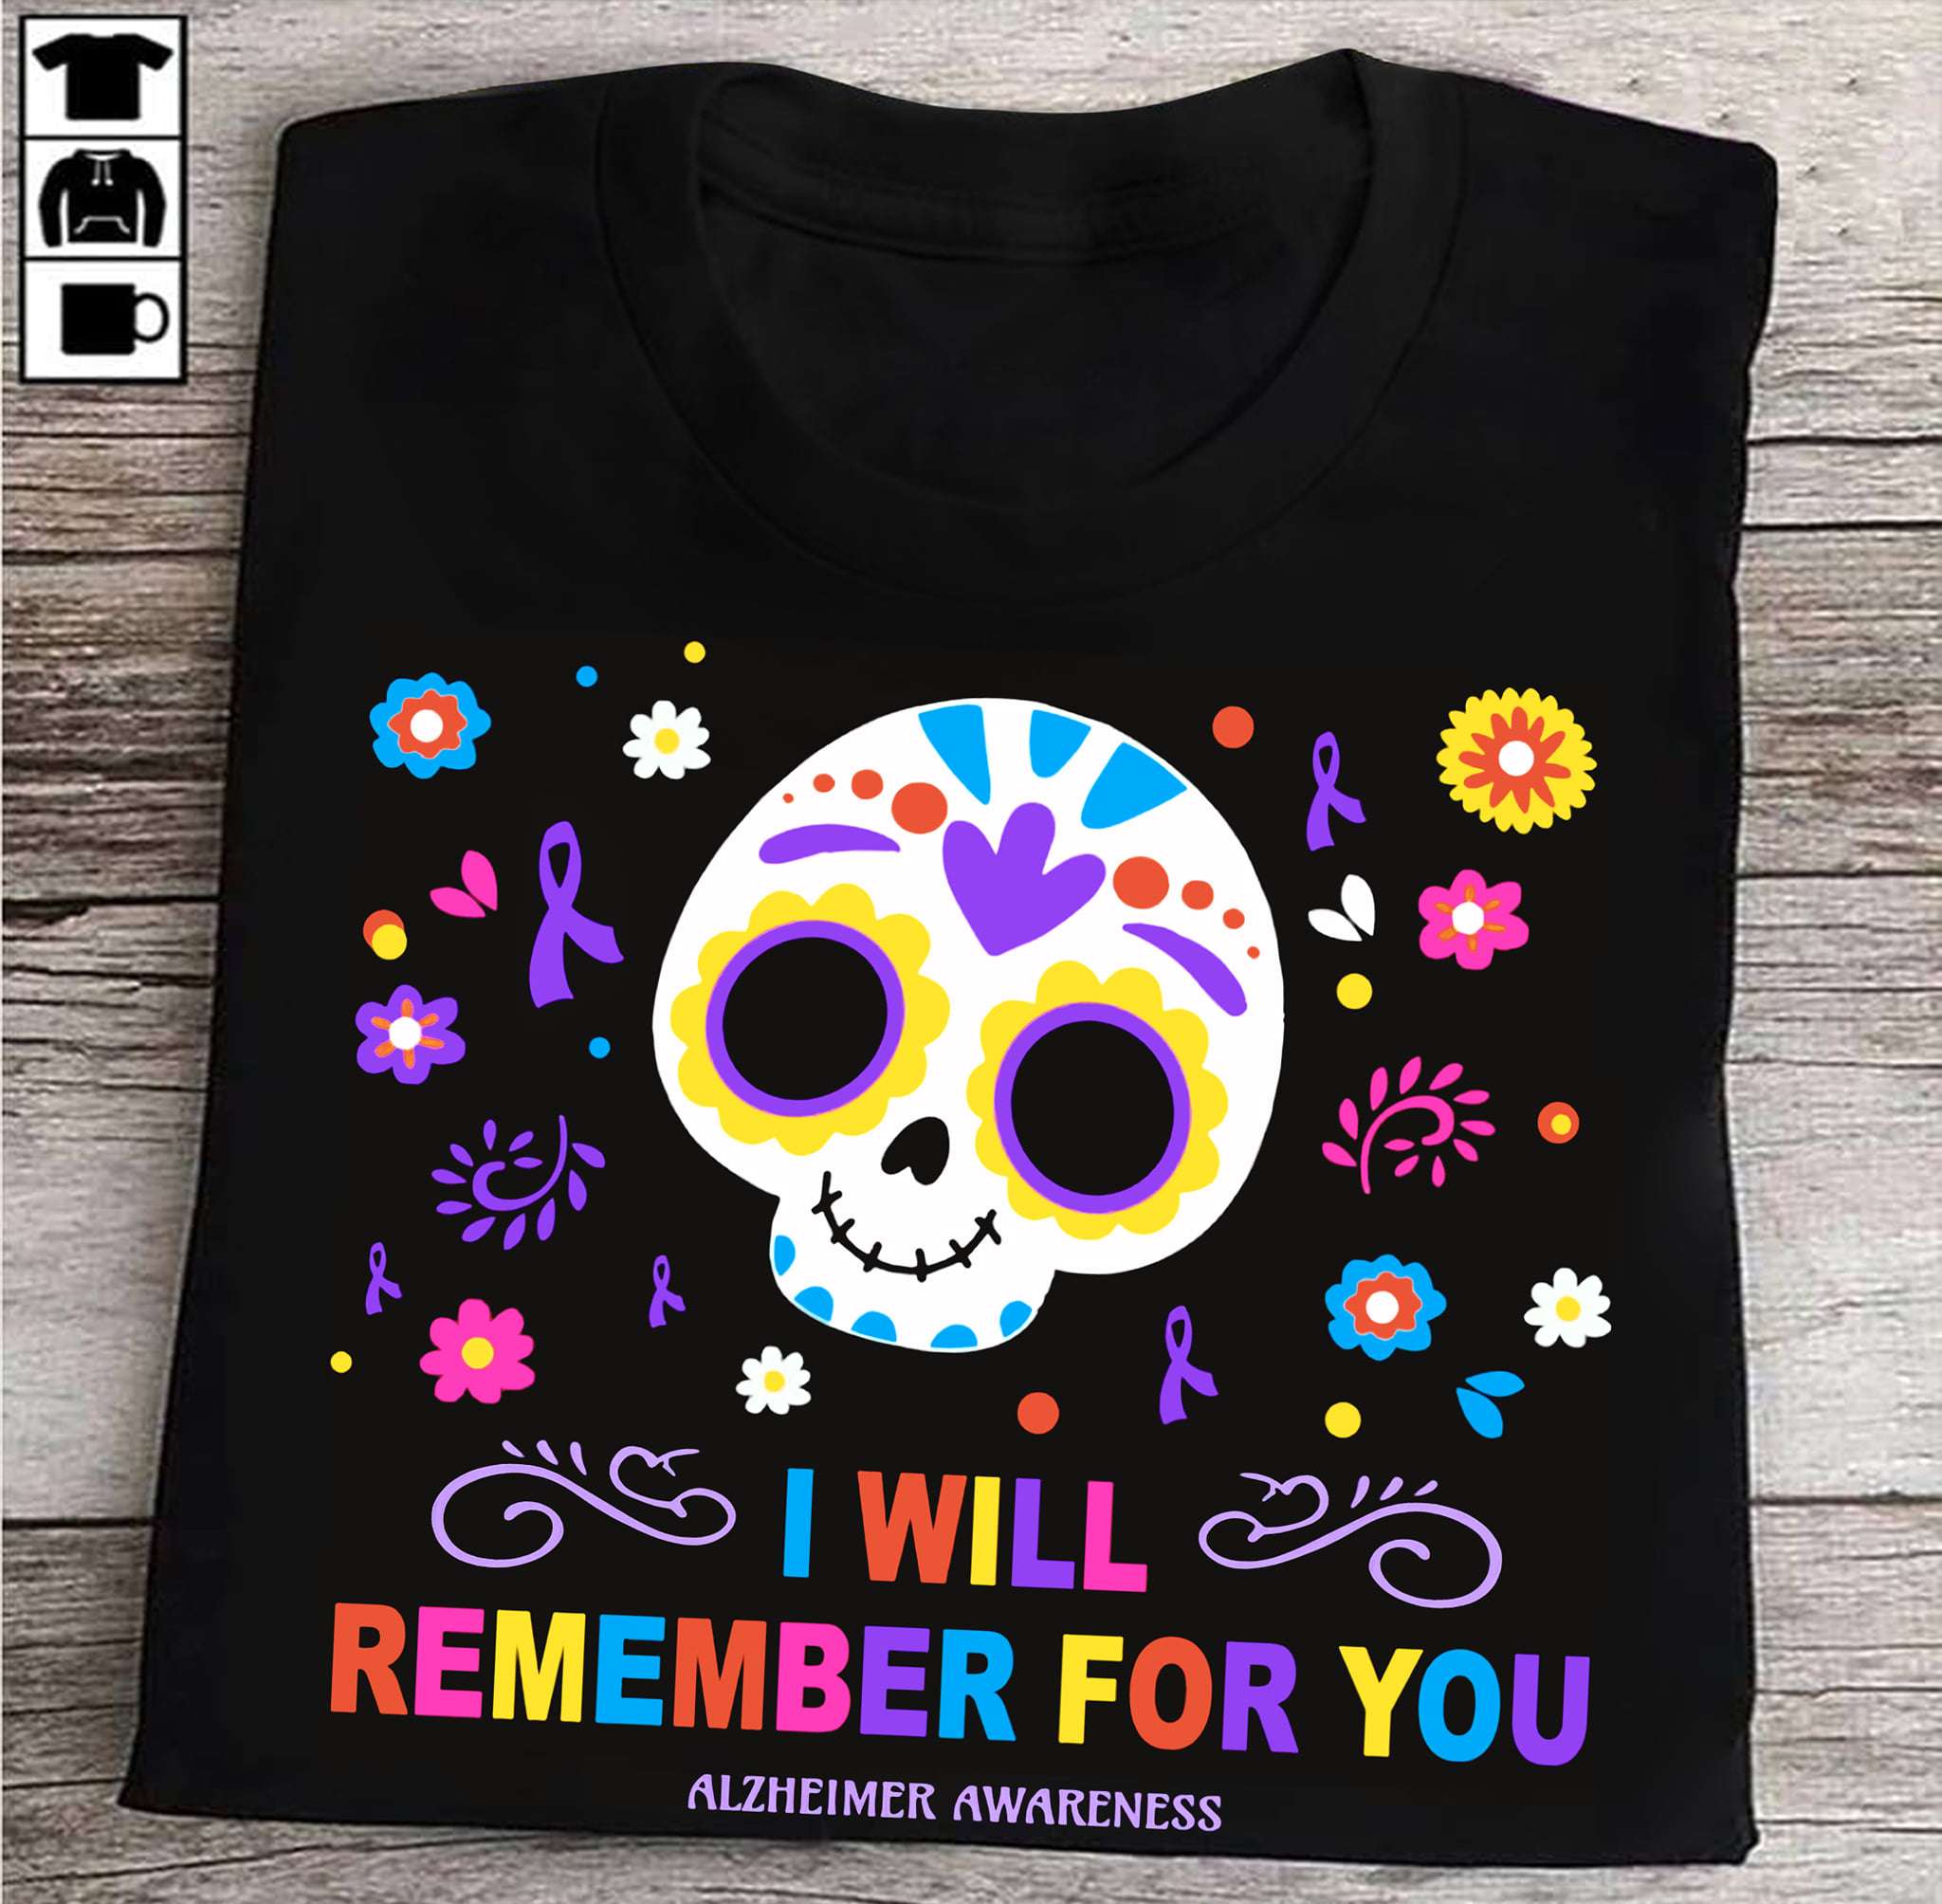 I will remember for you - Alzheimer awareness, Mexican skull alzheimer